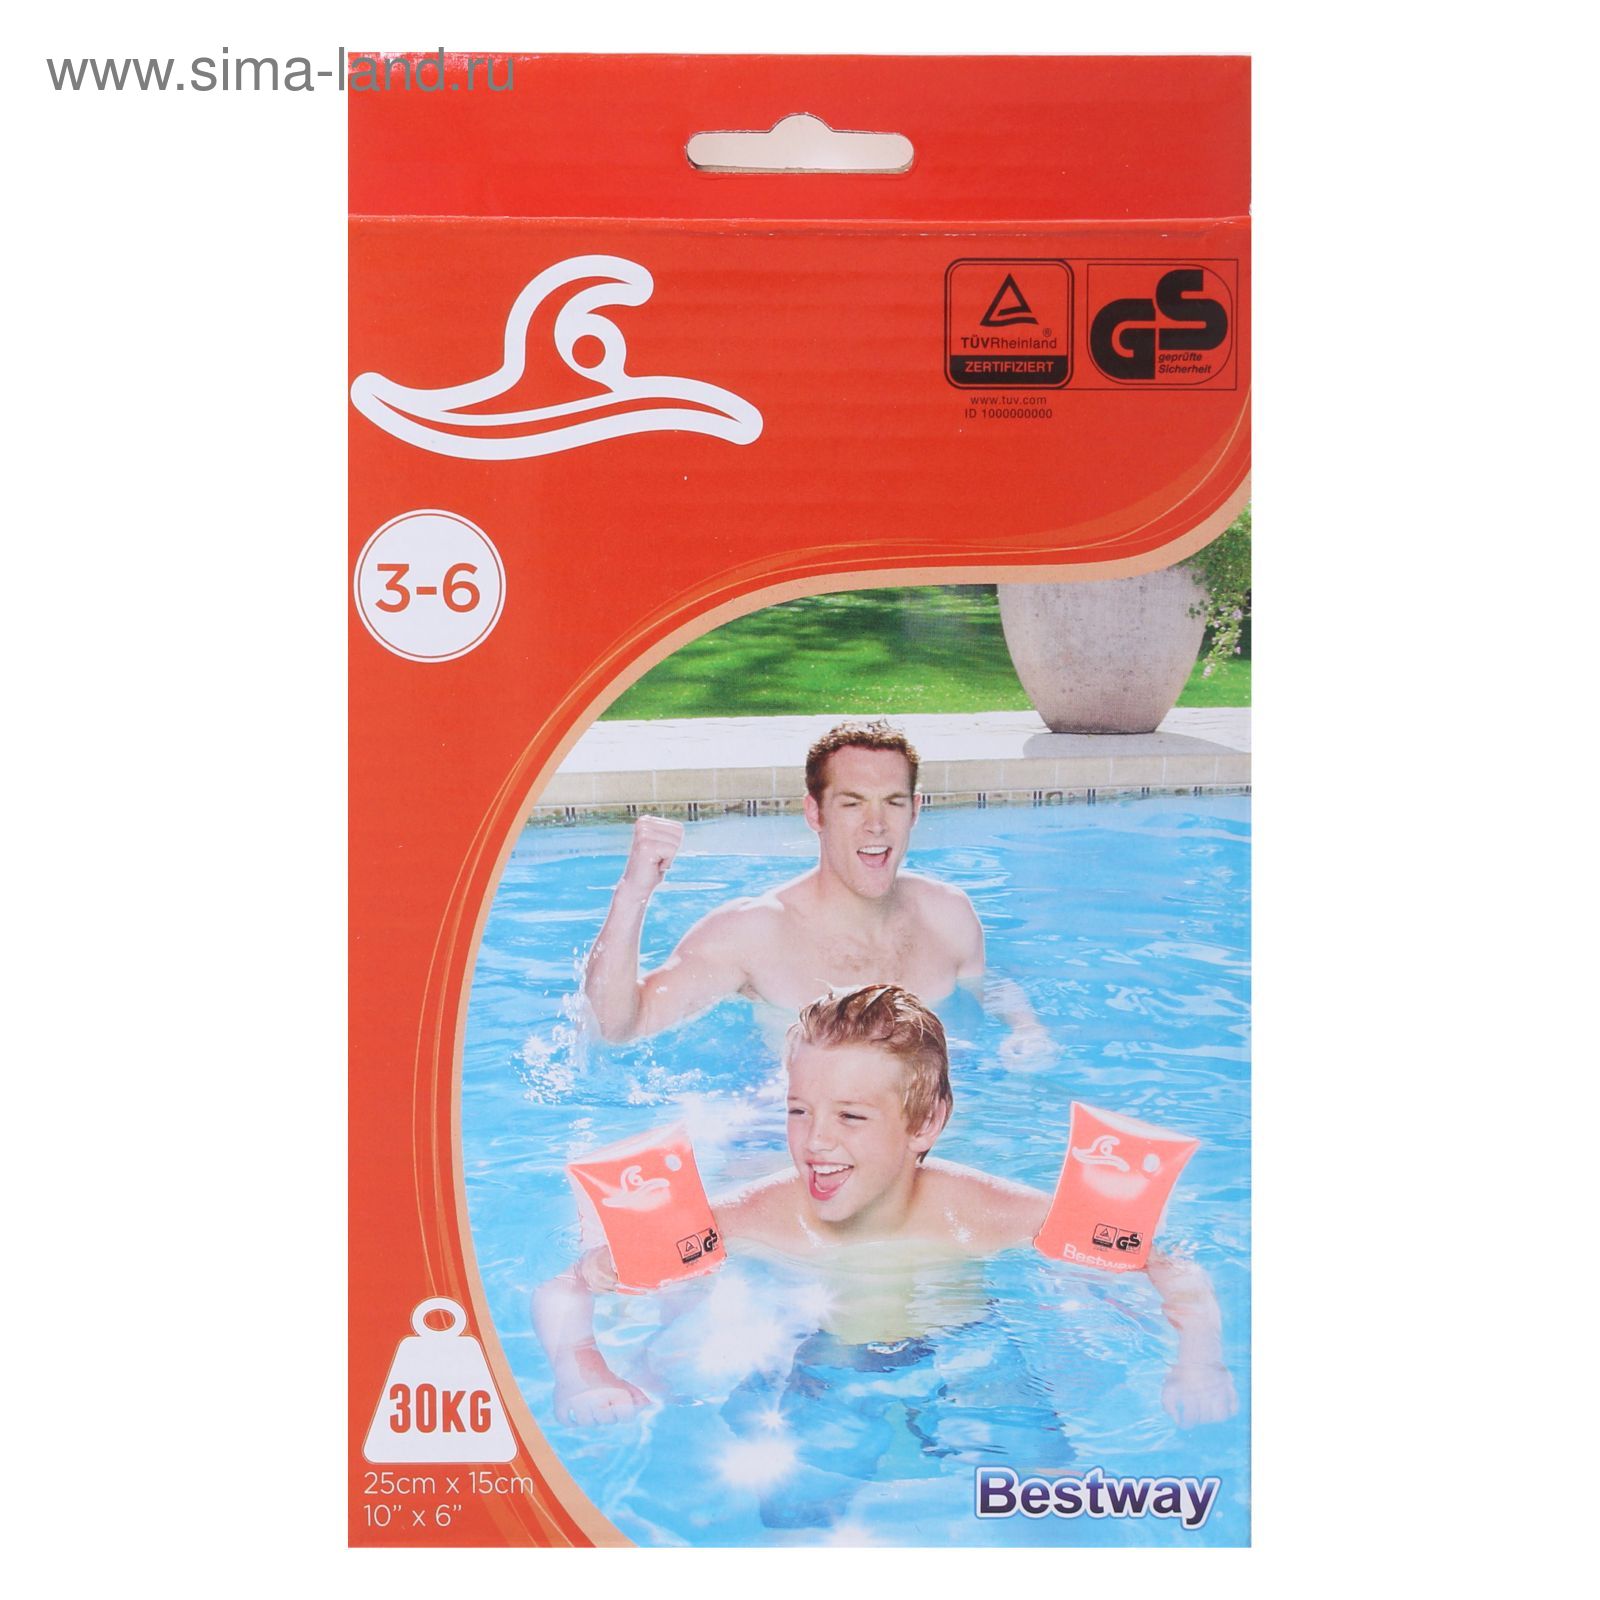 Нарукавники для плавания Safe-2-Swim, 25 х 15 см, 3-6 лет Bestway